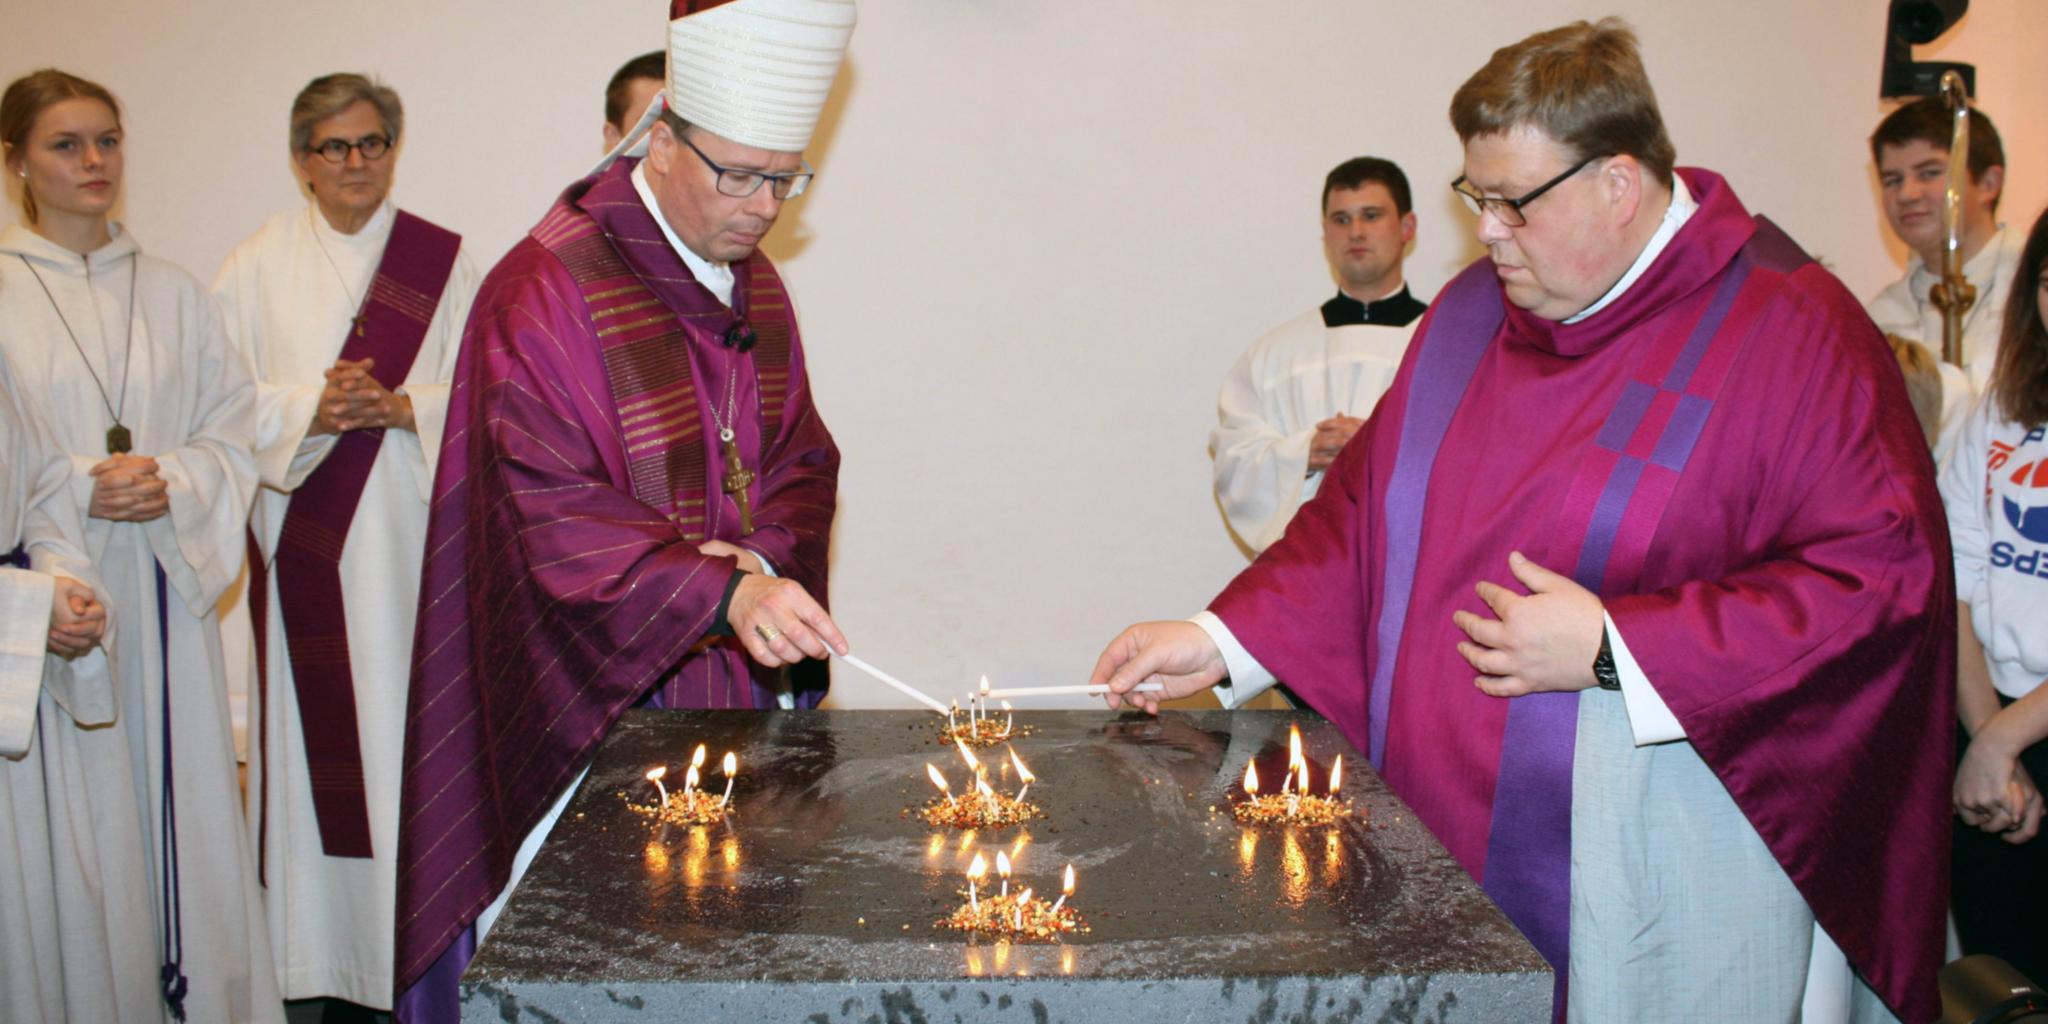 Bischof Dr. Stephan Ackermann und Pastor Stefan Dumont entzünden Weihrauch auf dem Altar. Dieser soll an die fünf Wundmale Christi erinnern.